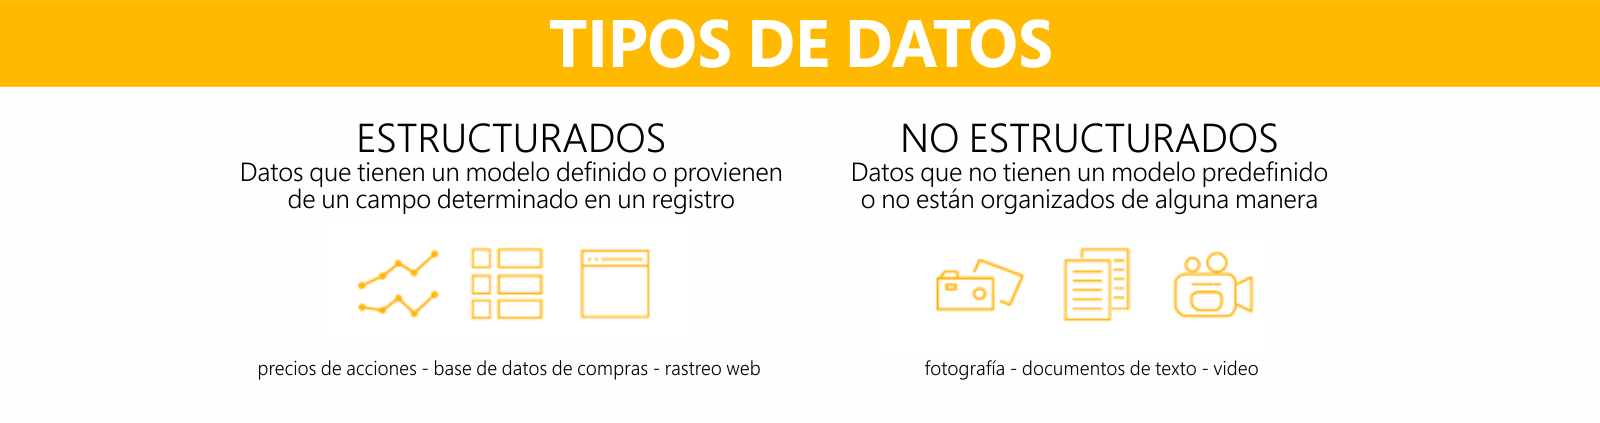 DatosParaTodos - tipos de data - 09072015